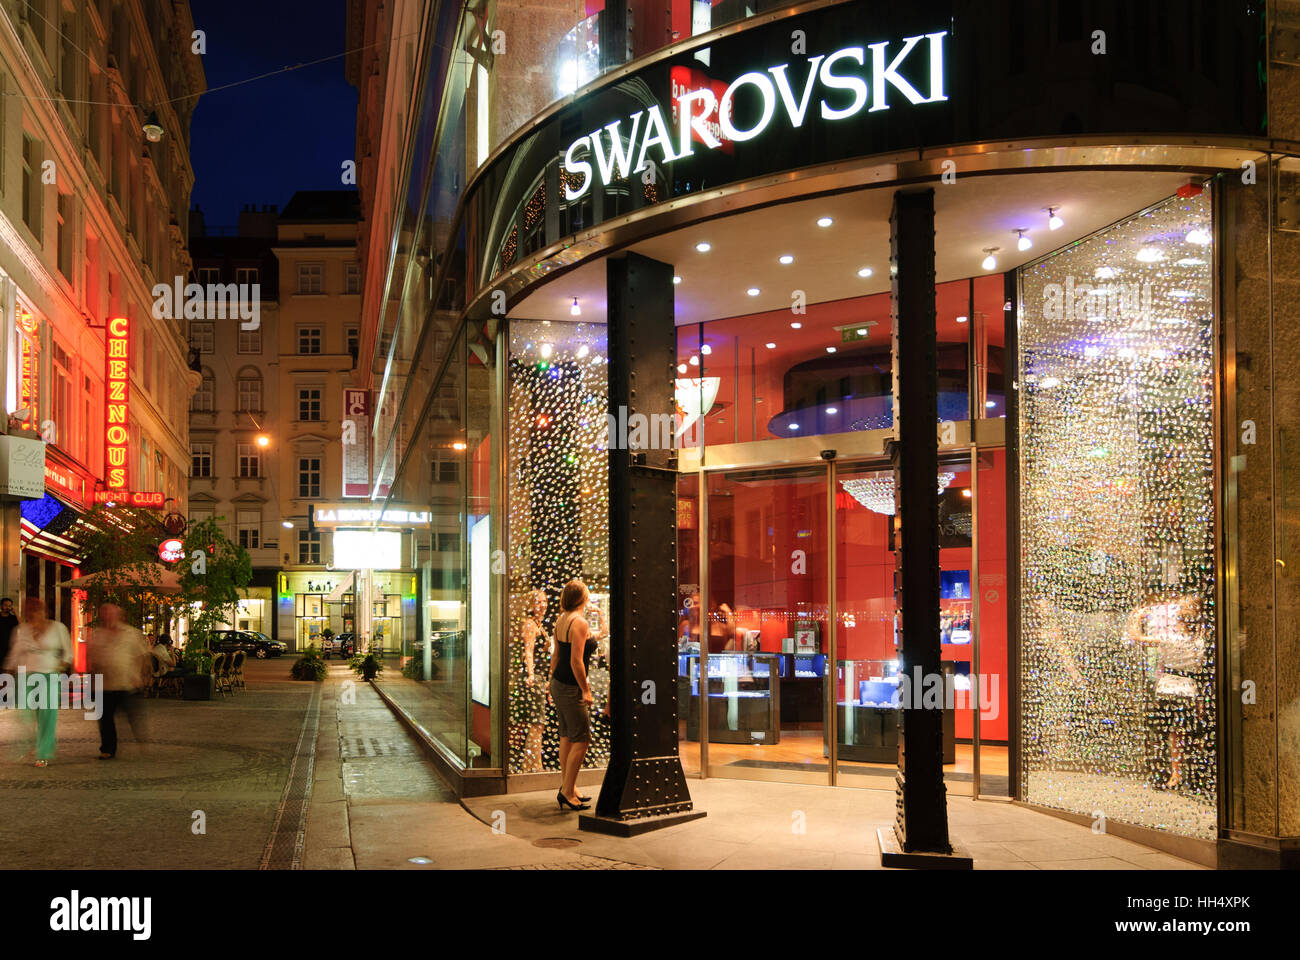 Swarovski shop Banque de photographies et d'images à haute résolution -  Alamy